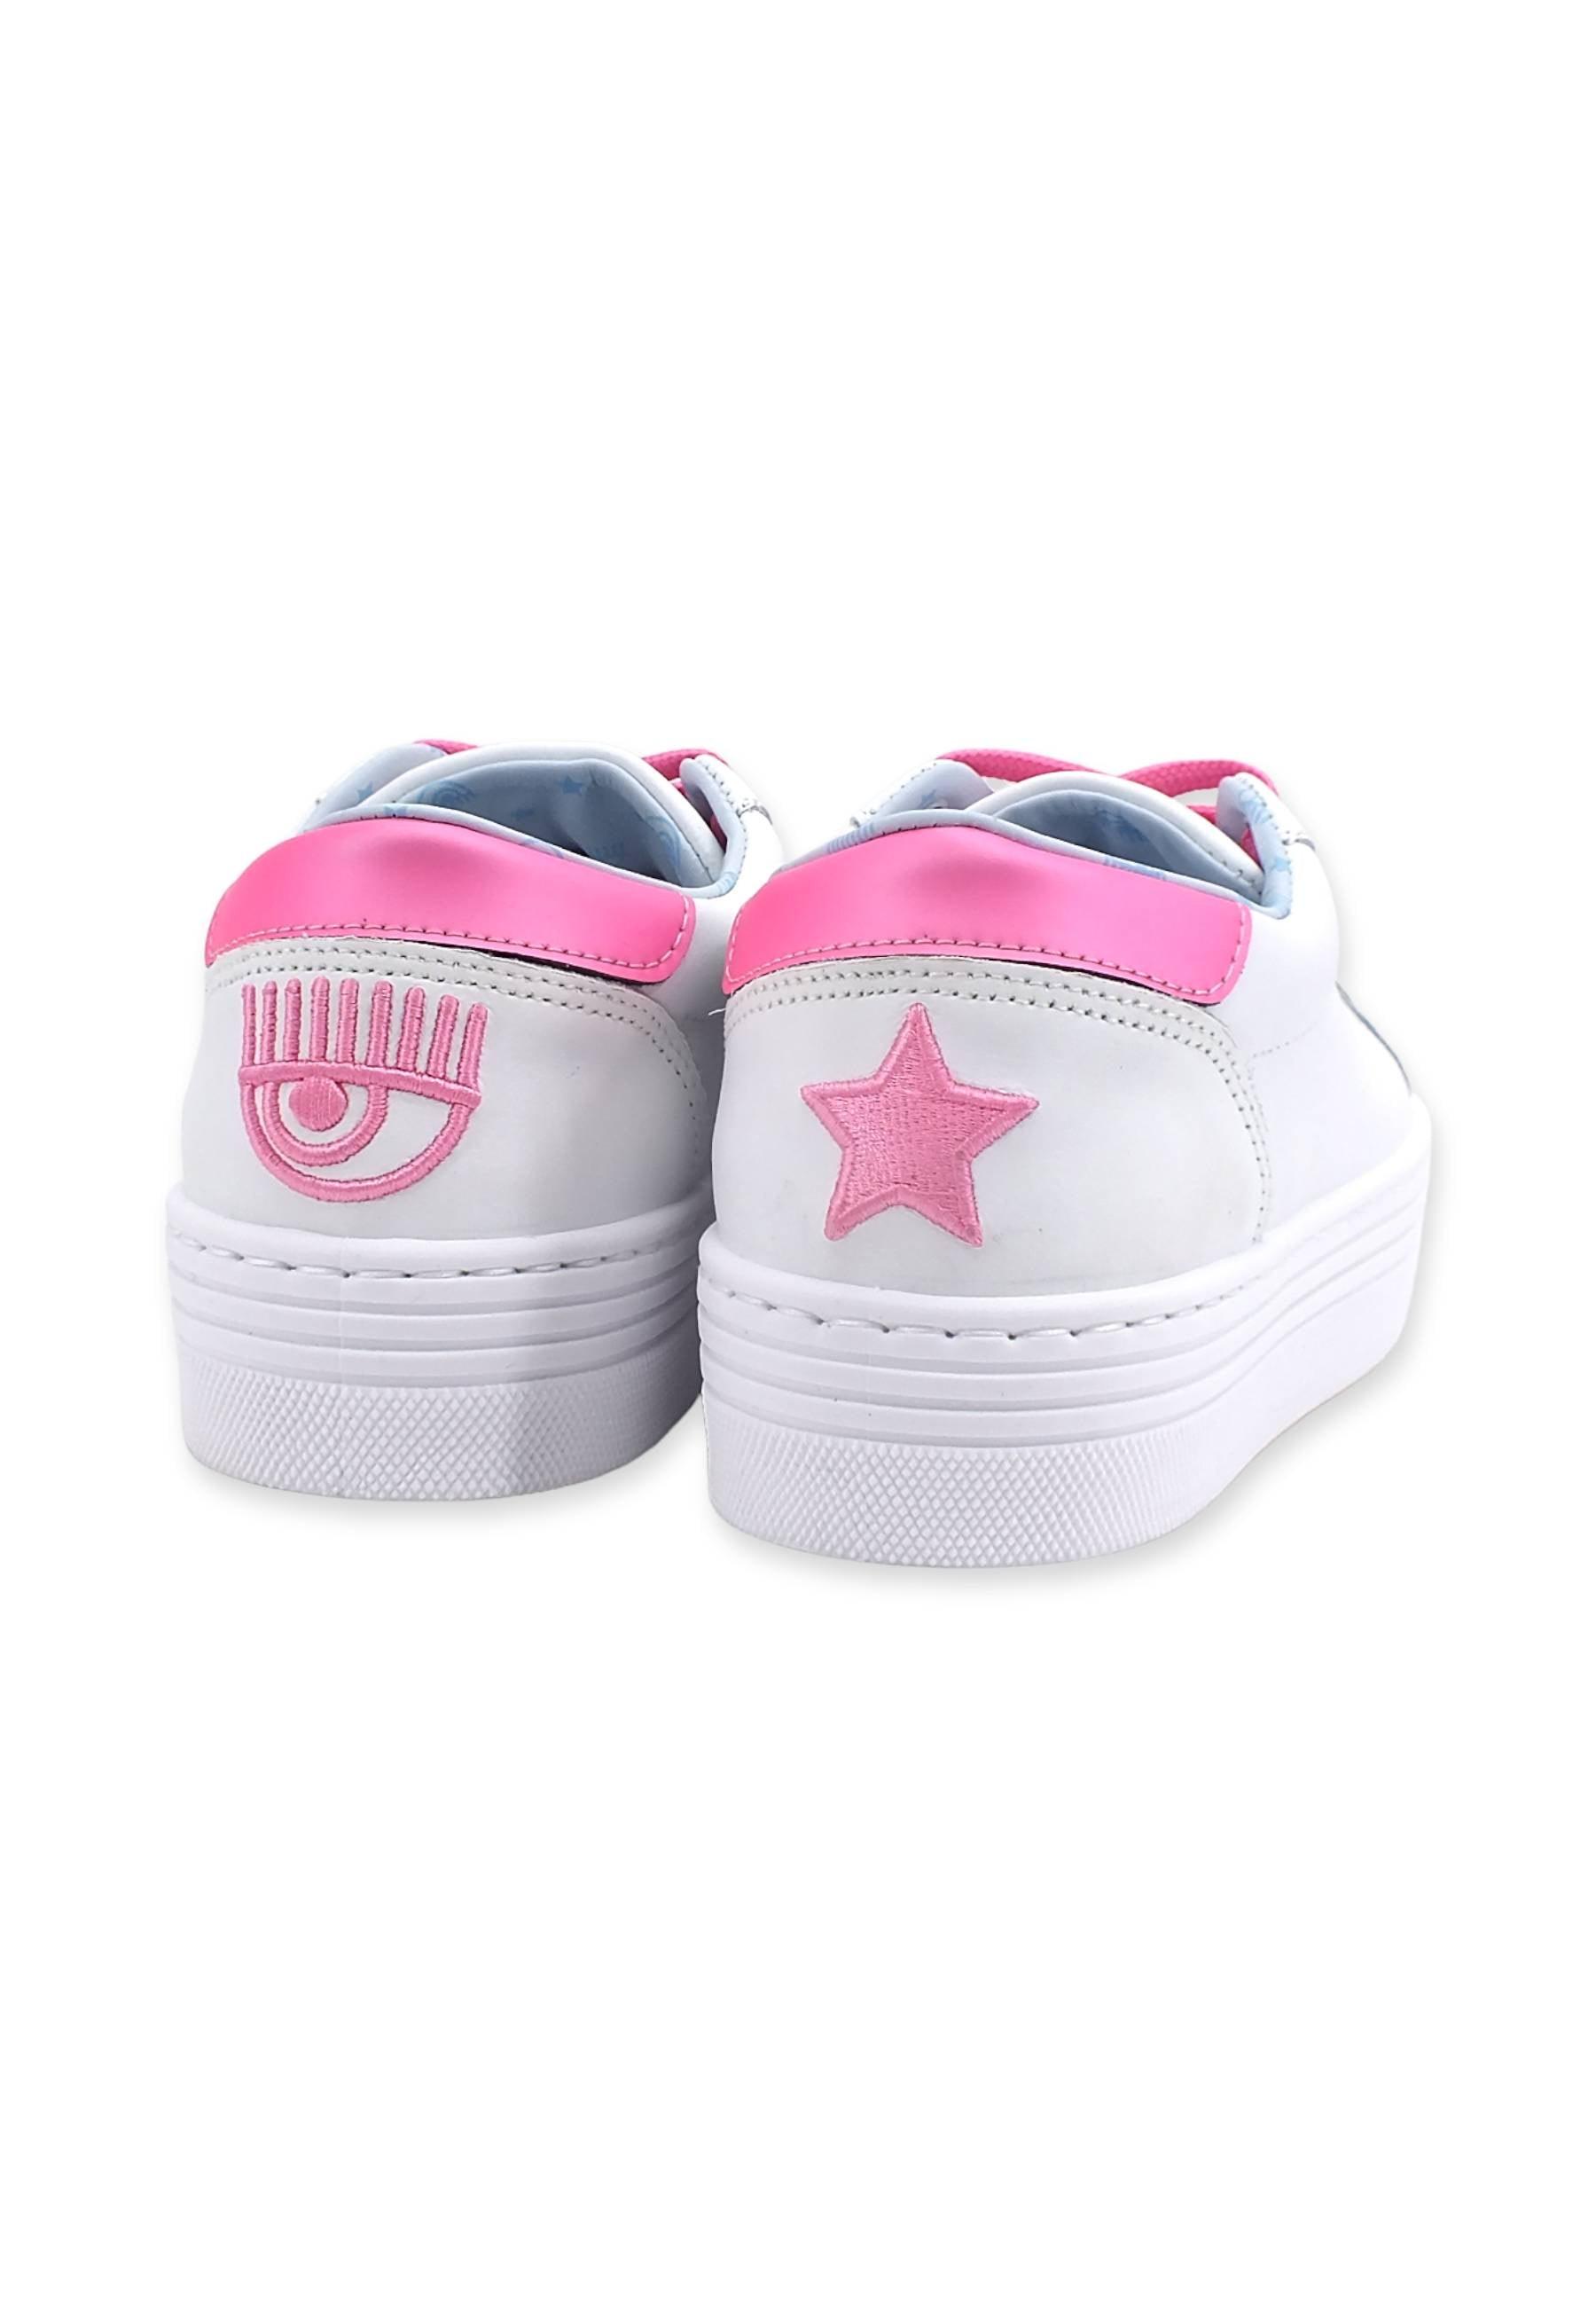 CHIARA FERRAGNI Sneaker Tennis Donna White Pink CF2917-072 - Sandrini Calzature e Abbigliamento